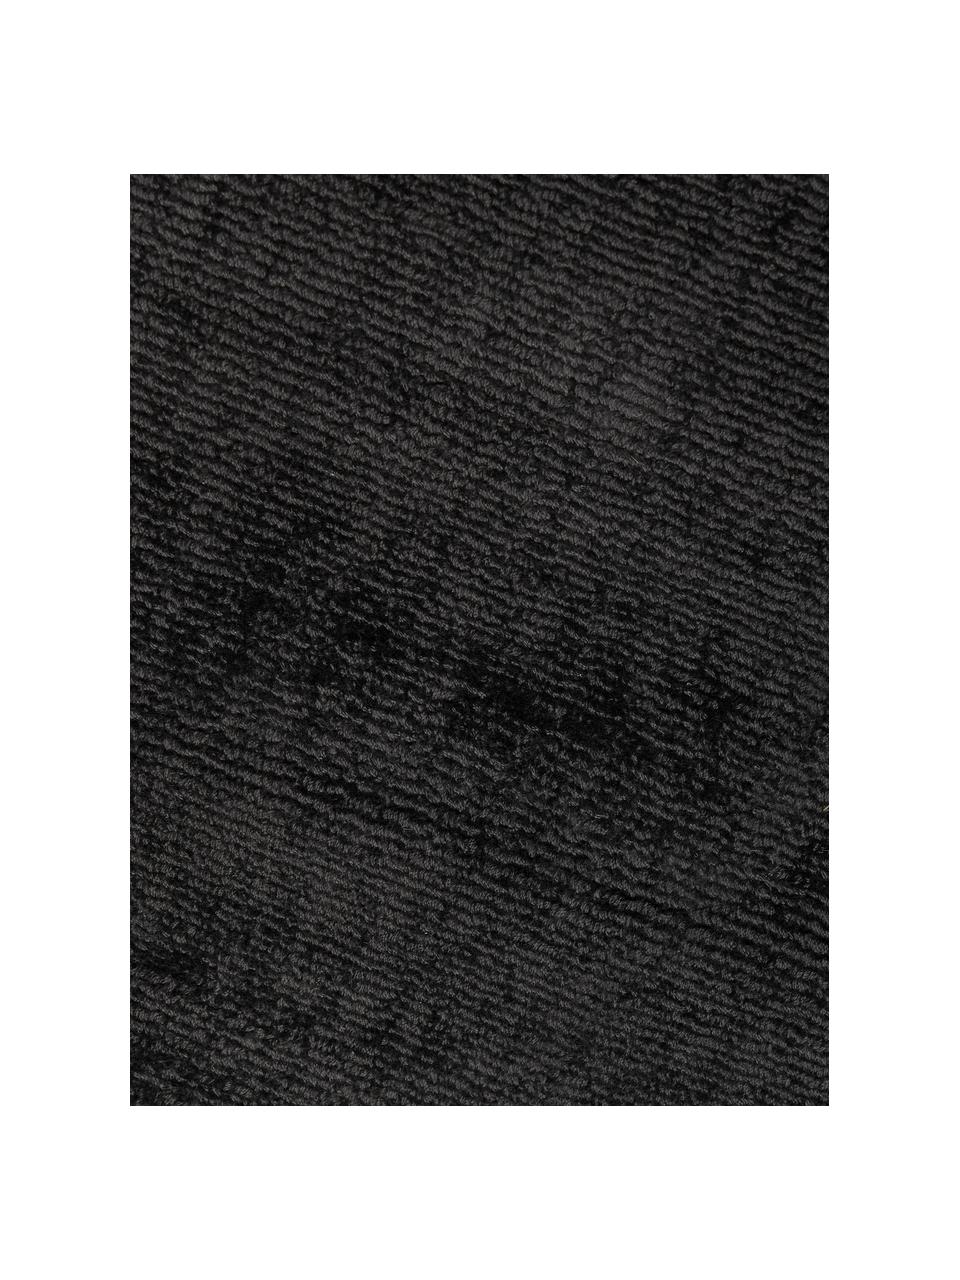 Tappeto in viscosa fatto a mano Jane, Retro: 100% cotone Il materiale , Antracite, Larg. 160 x Lung. 230 cm  (taglia M)